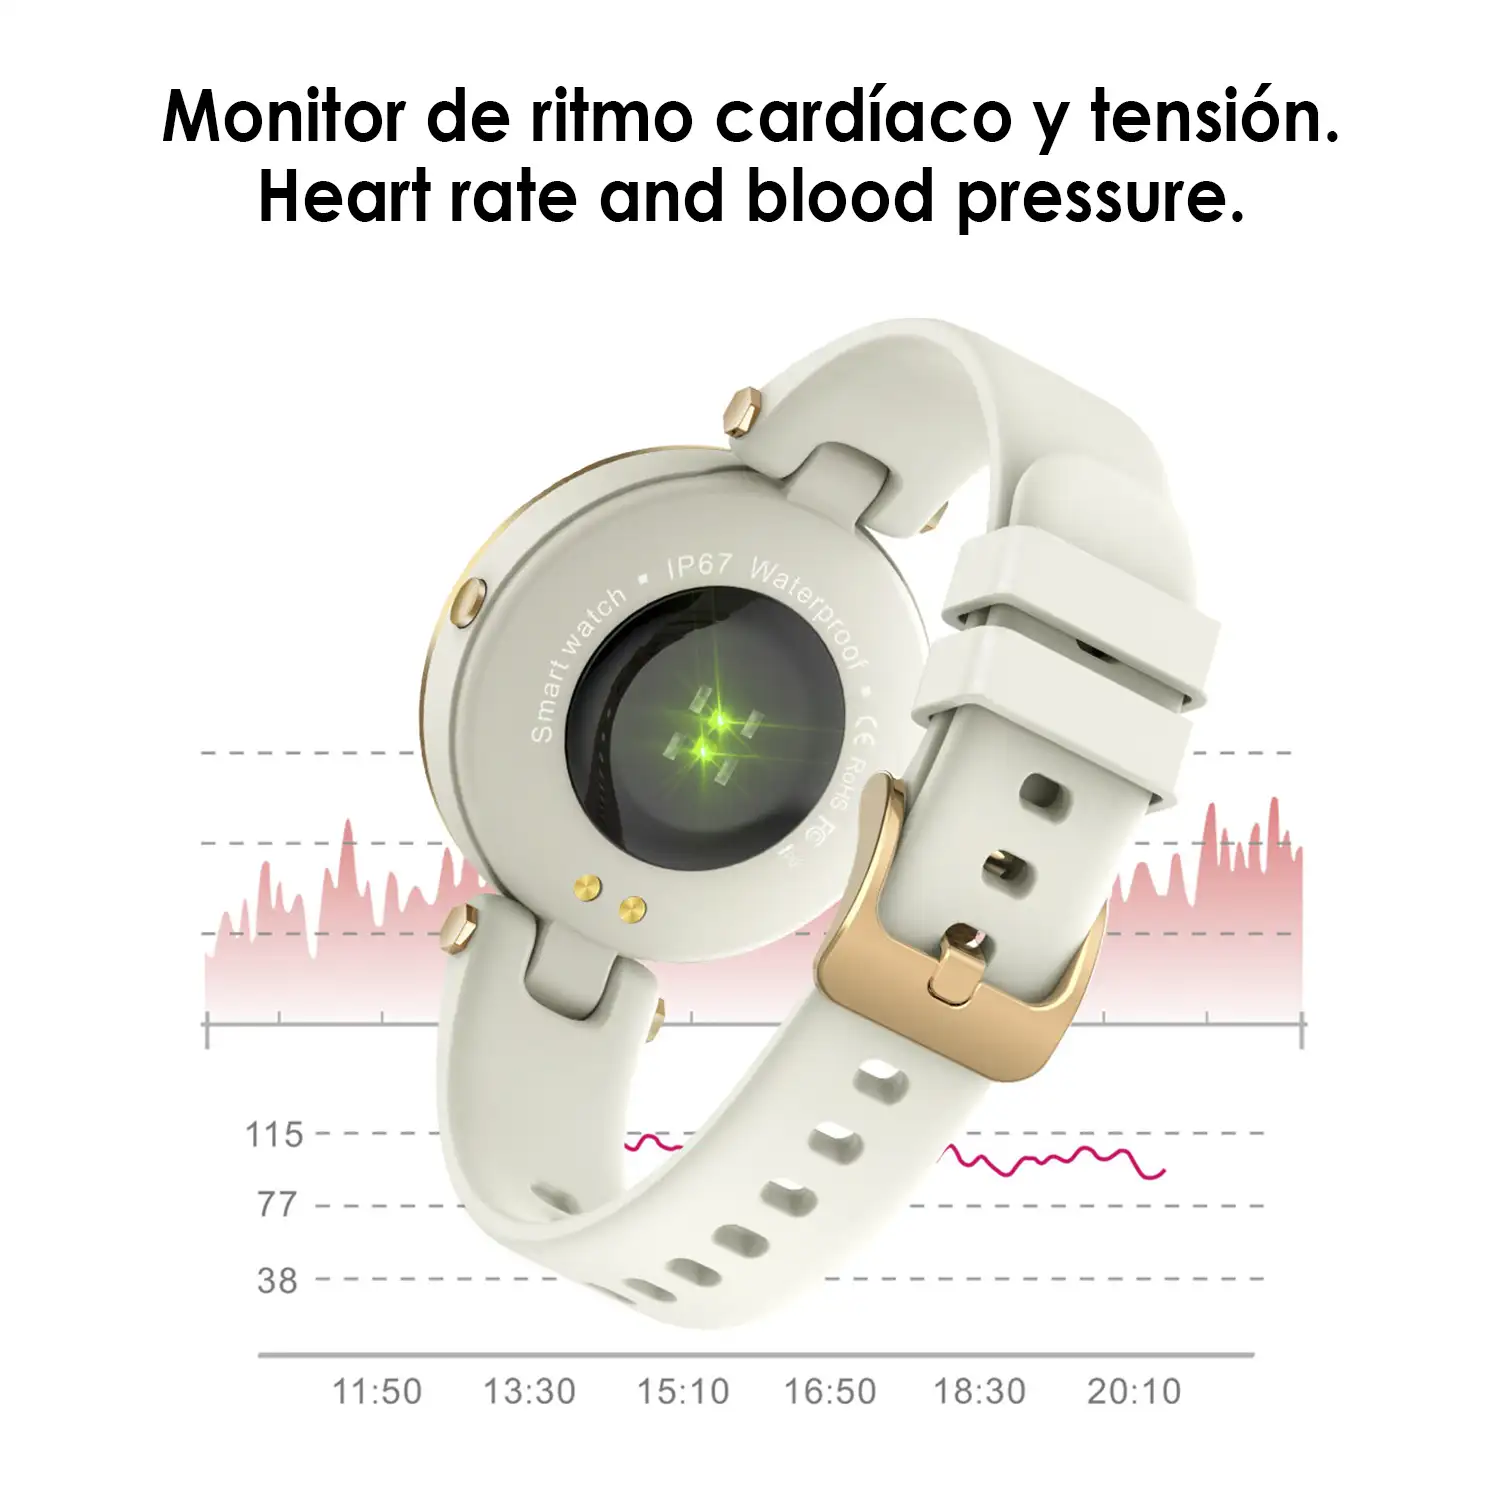 Smartwatch deportivo especial femenino QR01. 8 modos deportivos, monitor cardiaco y de tensión.